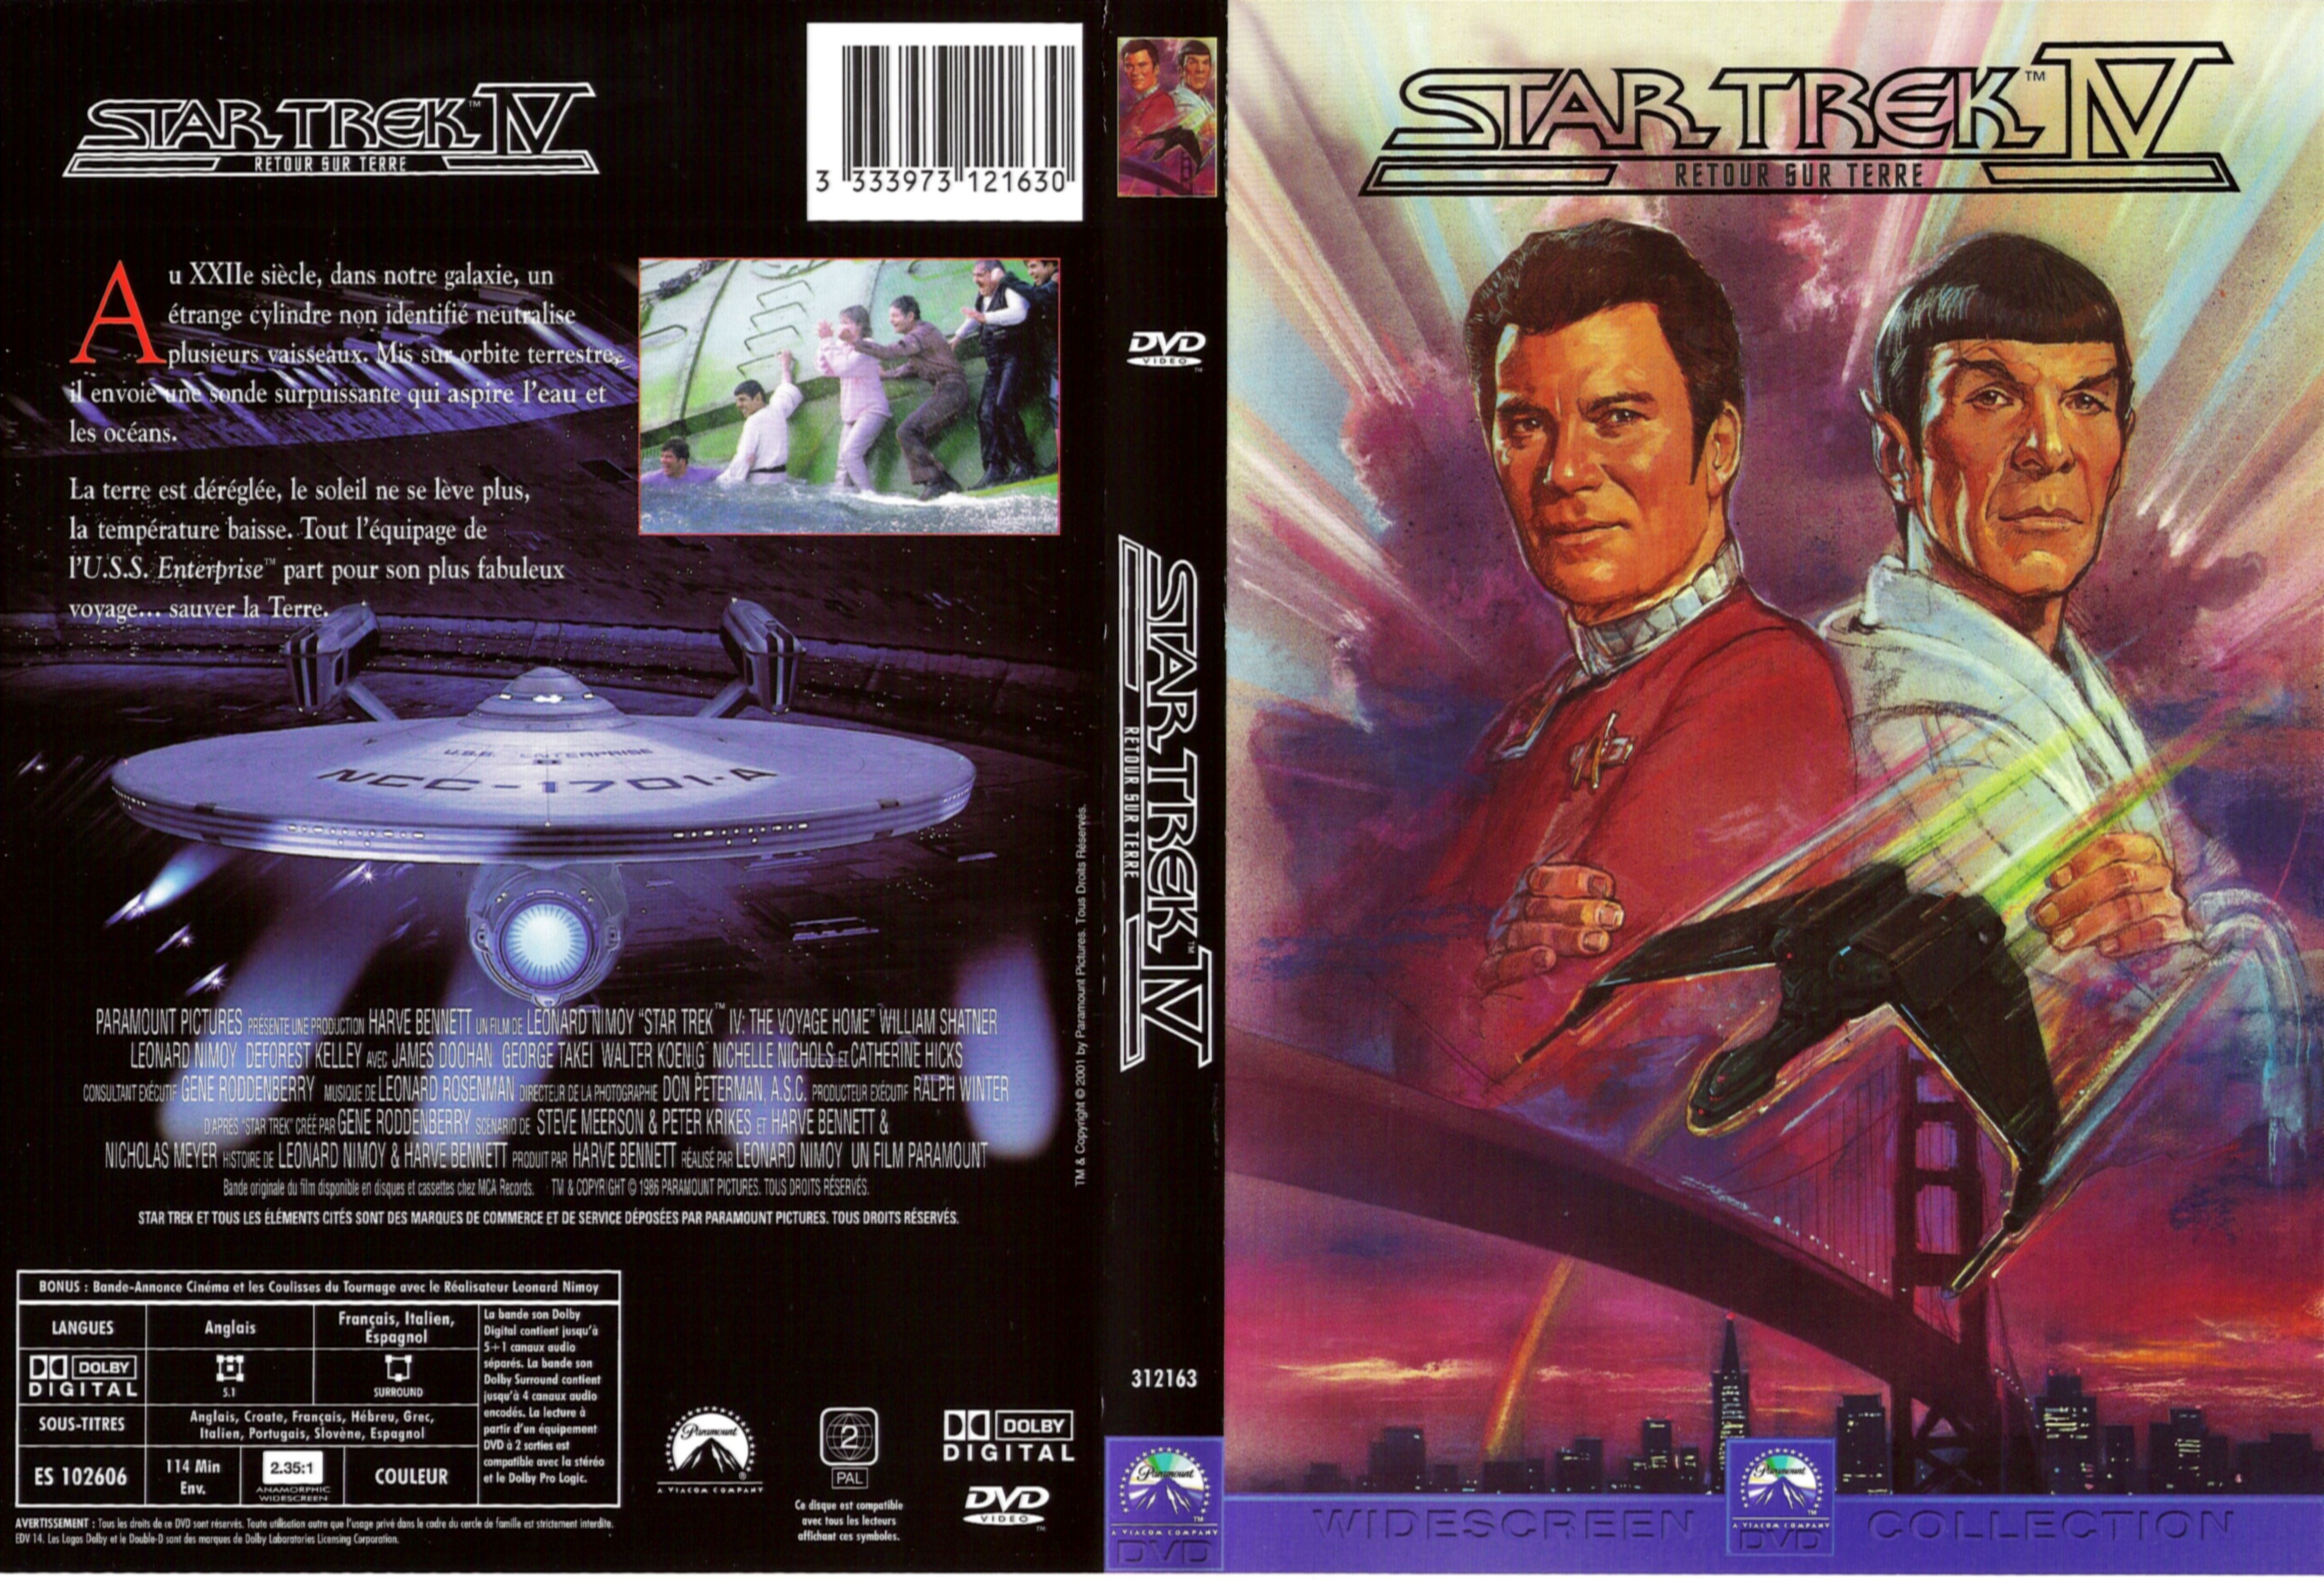 Jaquette DVD Star Trek 4 Retour sur terre